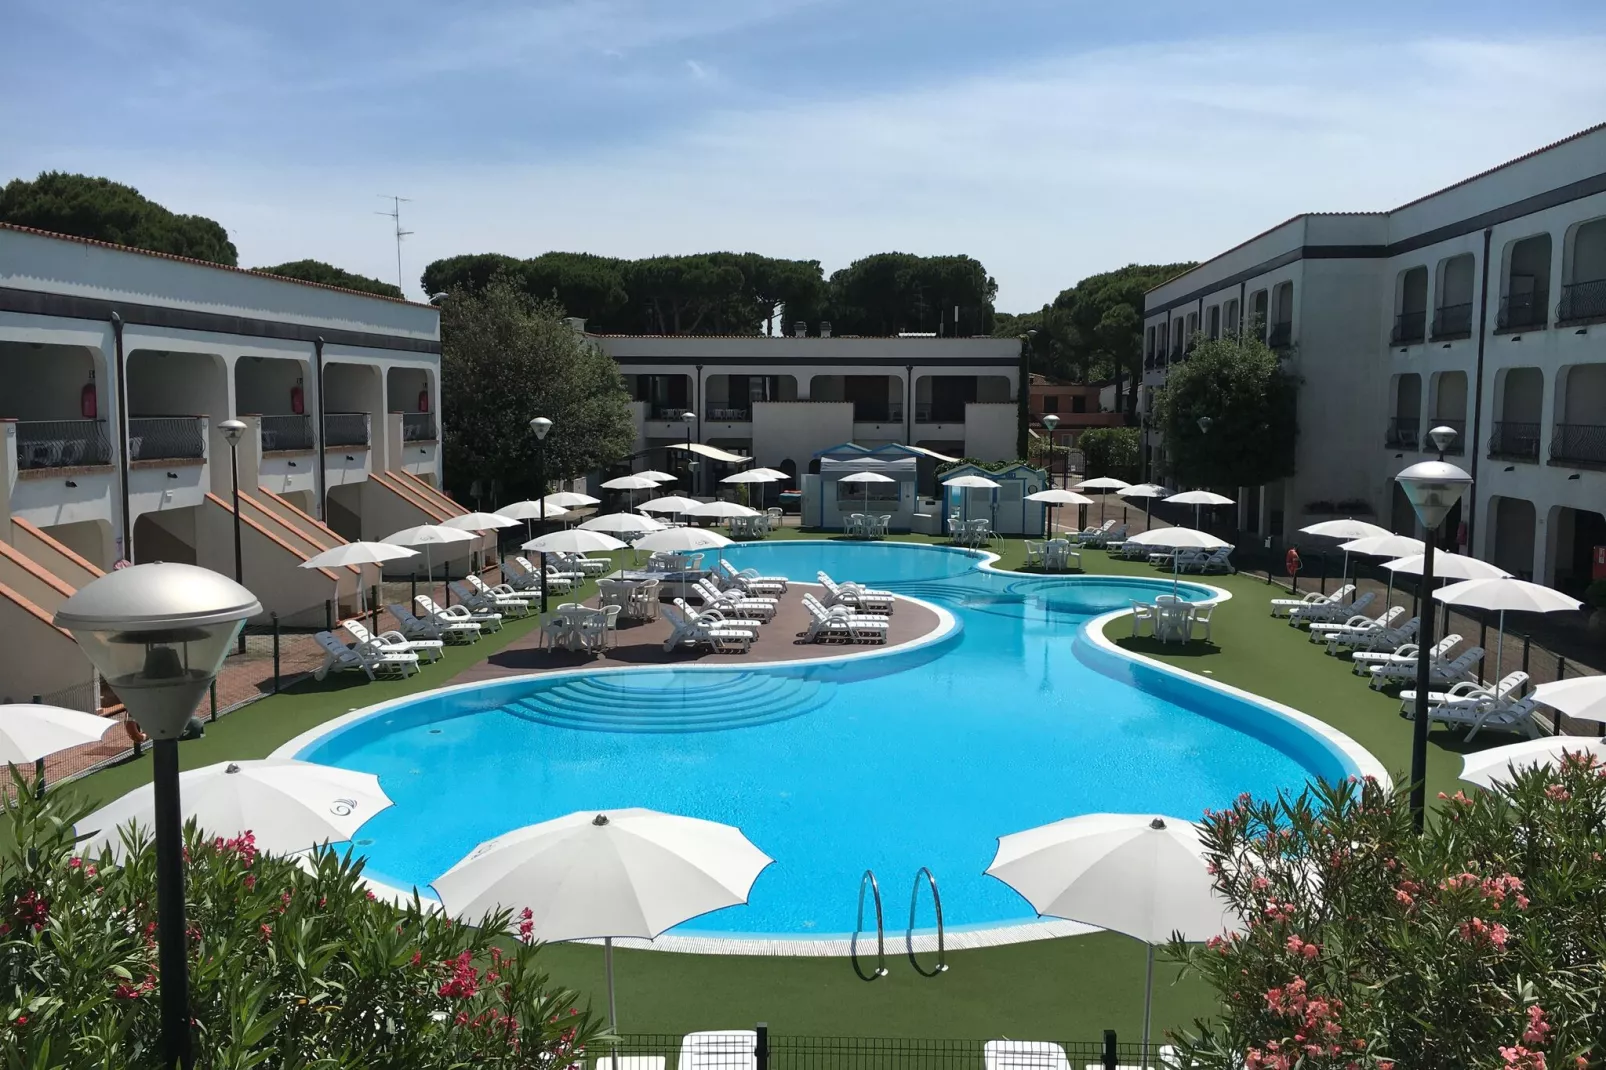 Michelangelo Hotel & Family Resort - Caliente Cinque-Parkfaciliteiten